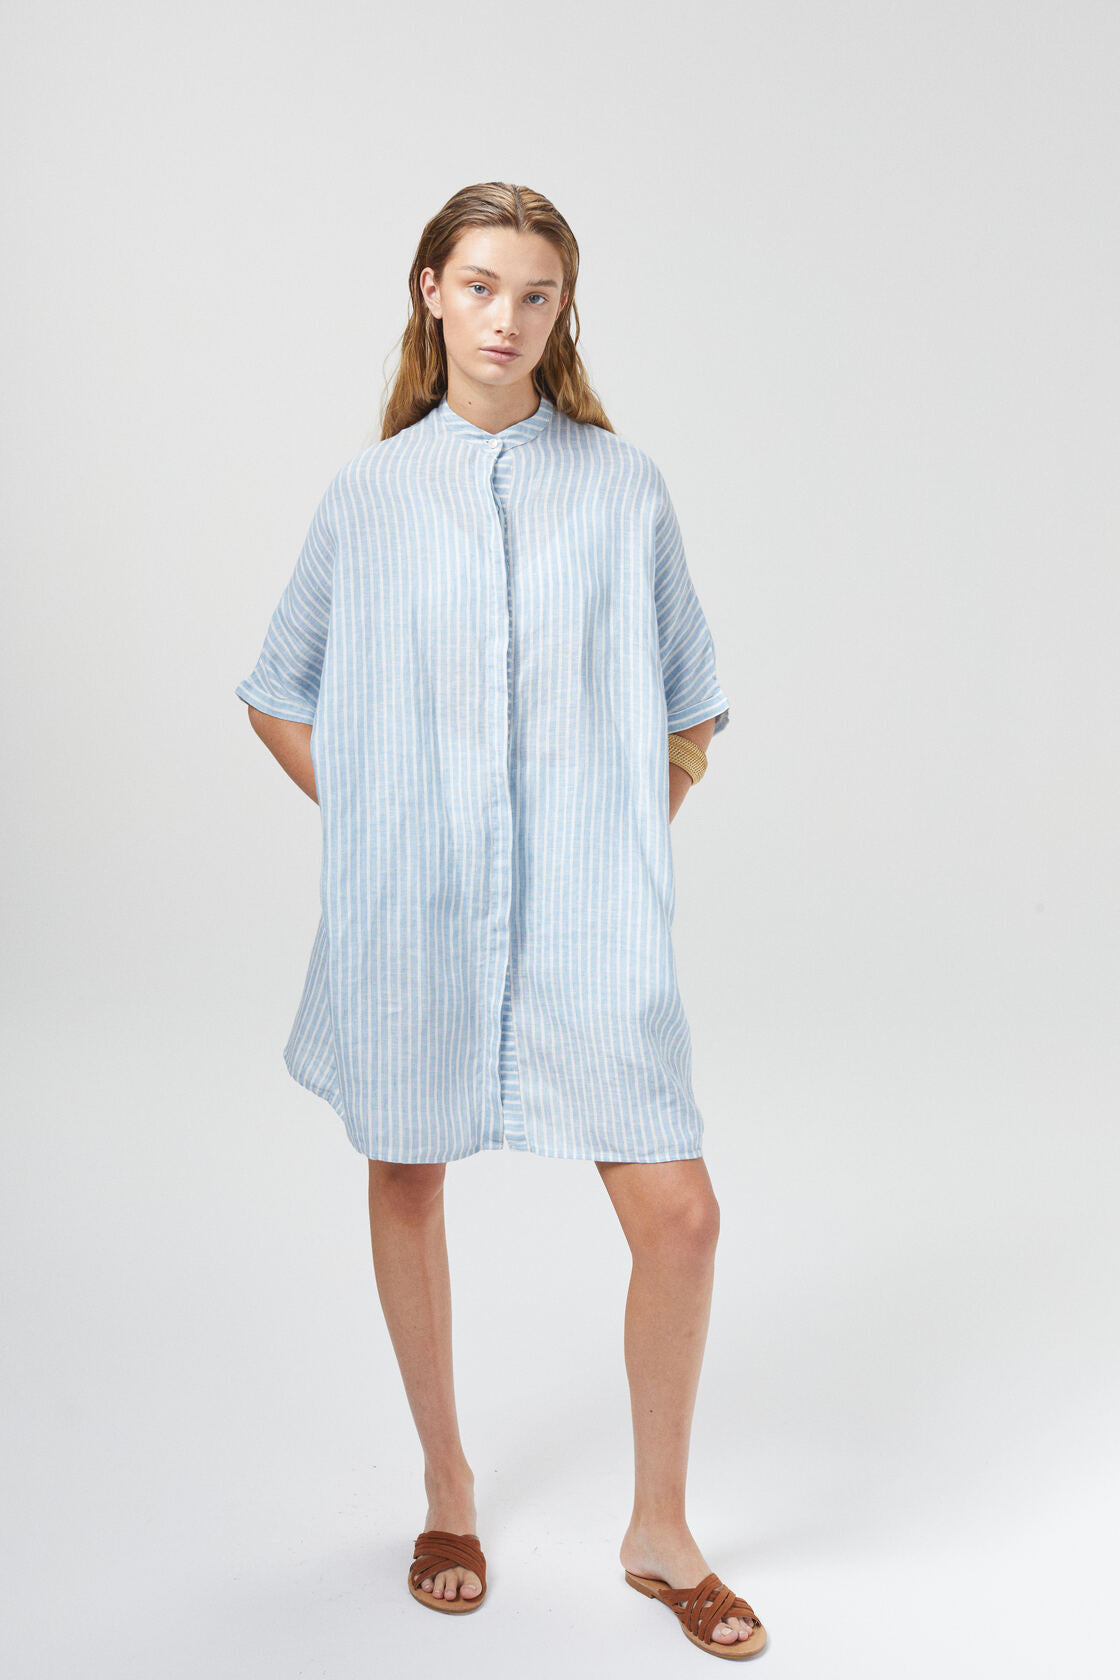 Lighthouse Linen Shirt Dress - Light Blue / White Stripes